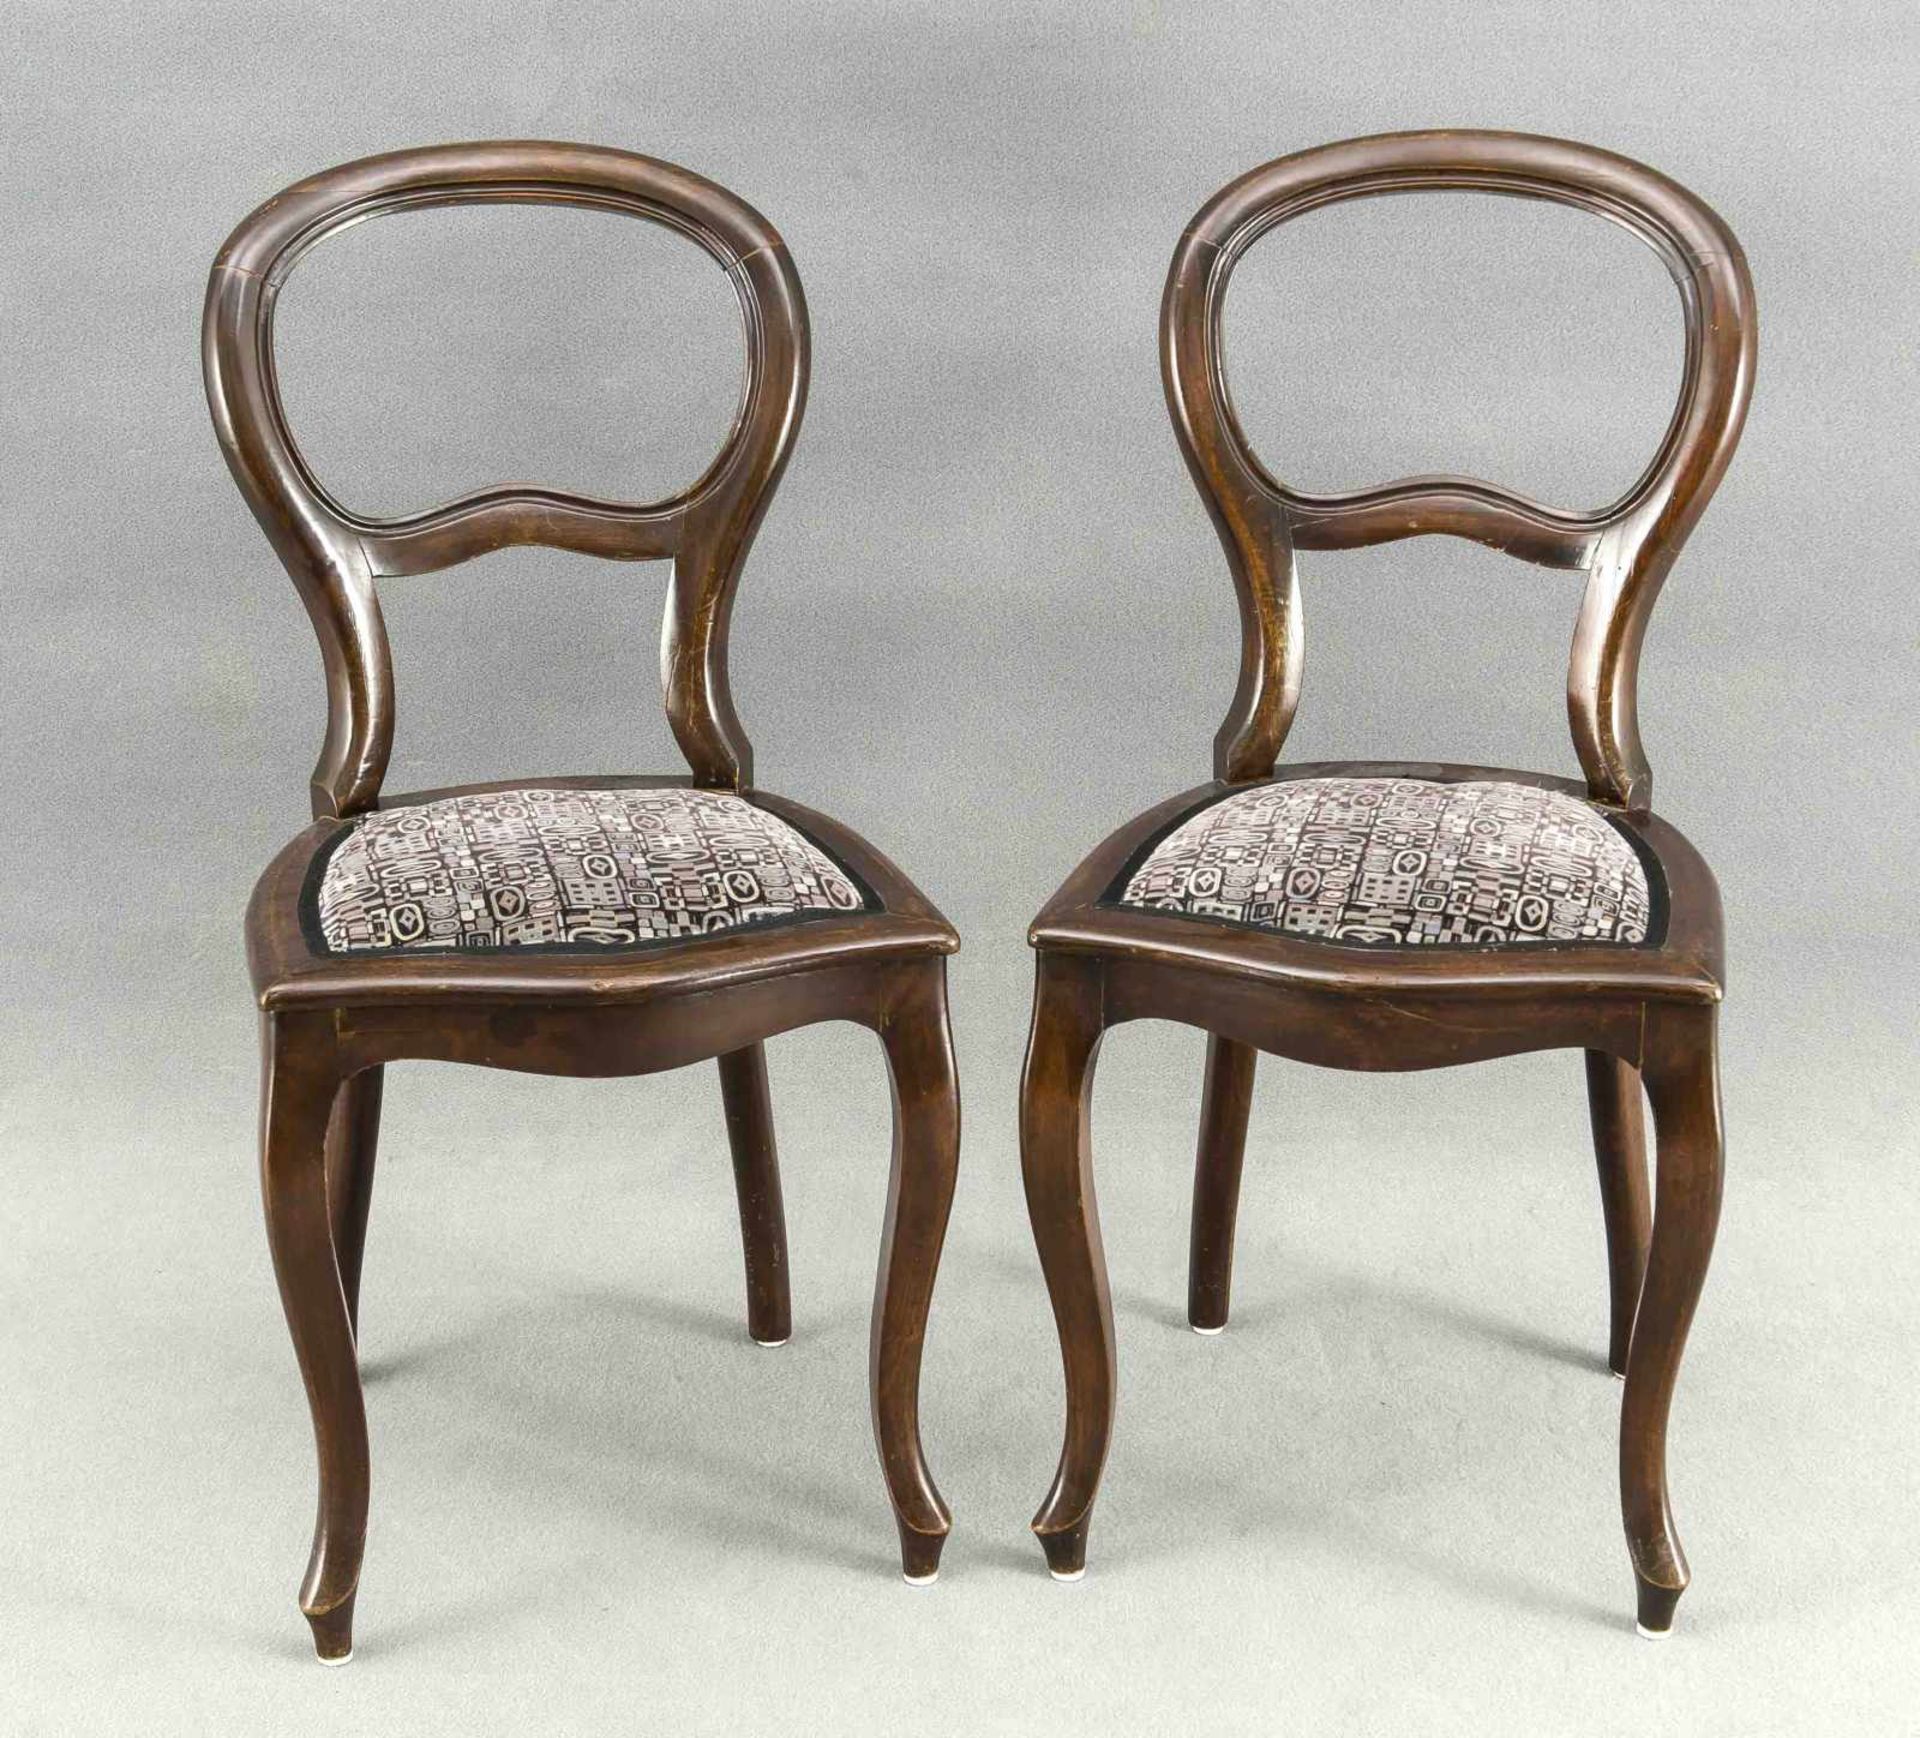 Sitzgruppe, Louis-Philippe um 1860, bestehend aus Tisch und vier Stühlen, Mahagoni massiv/